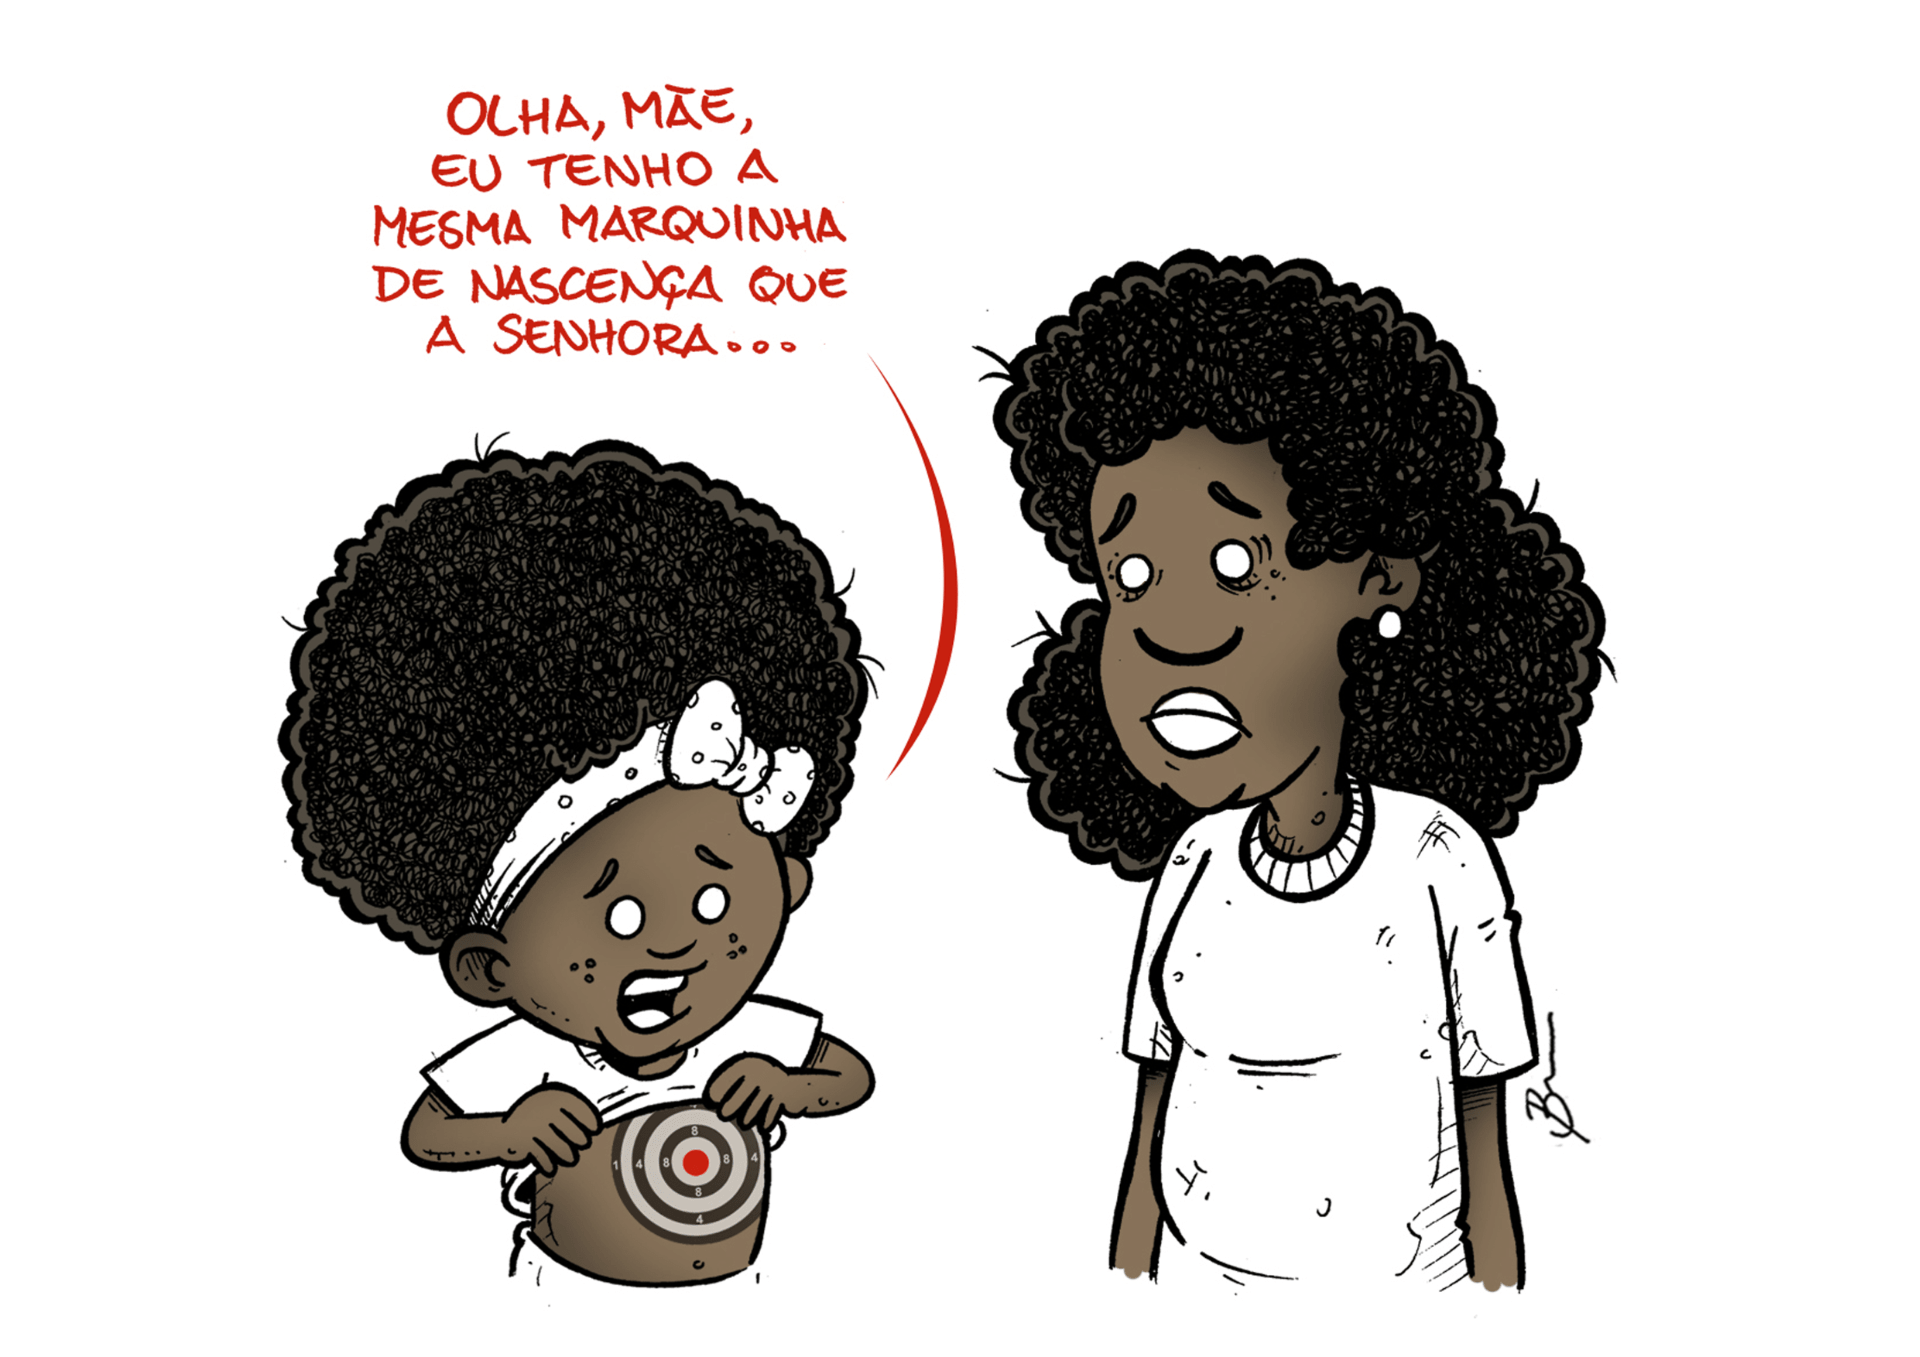 Criança negra com alvo pintado no abdômen, dizendo "Olha, mãe. Eu tenho a mesma marquina de nascença que a senhora..."